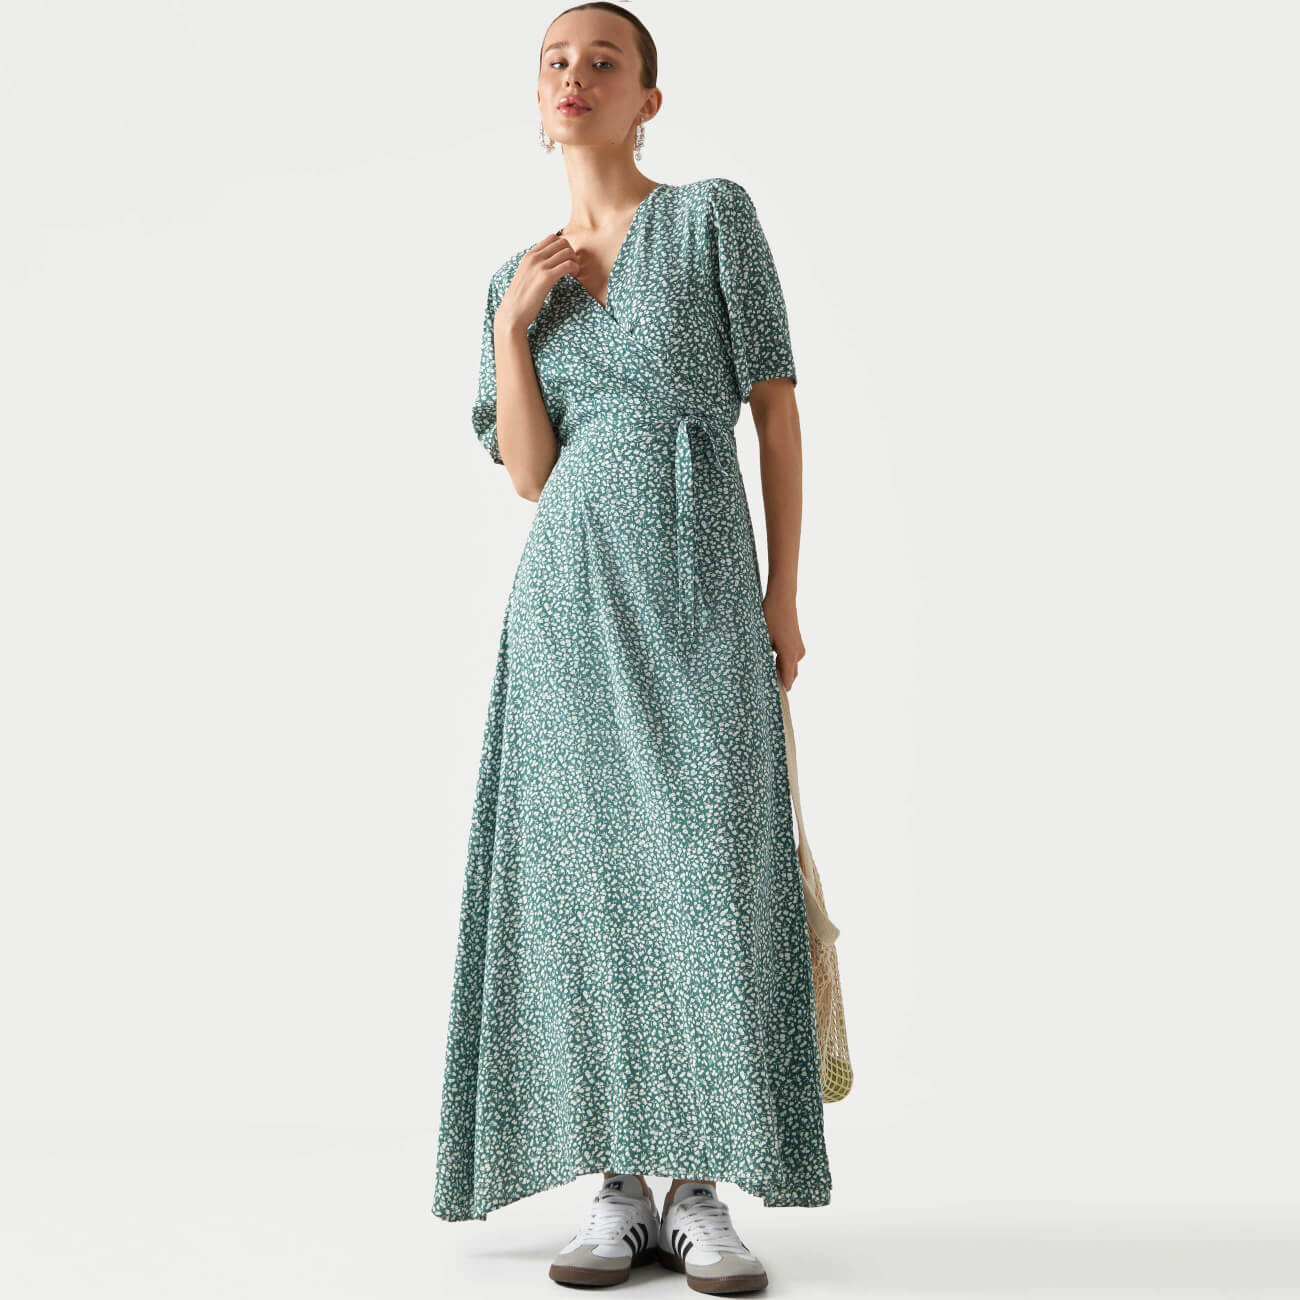  Платье женское, р. M, миди, с коротким рукавом, вискоза, зеленое, Цветы, Marcia